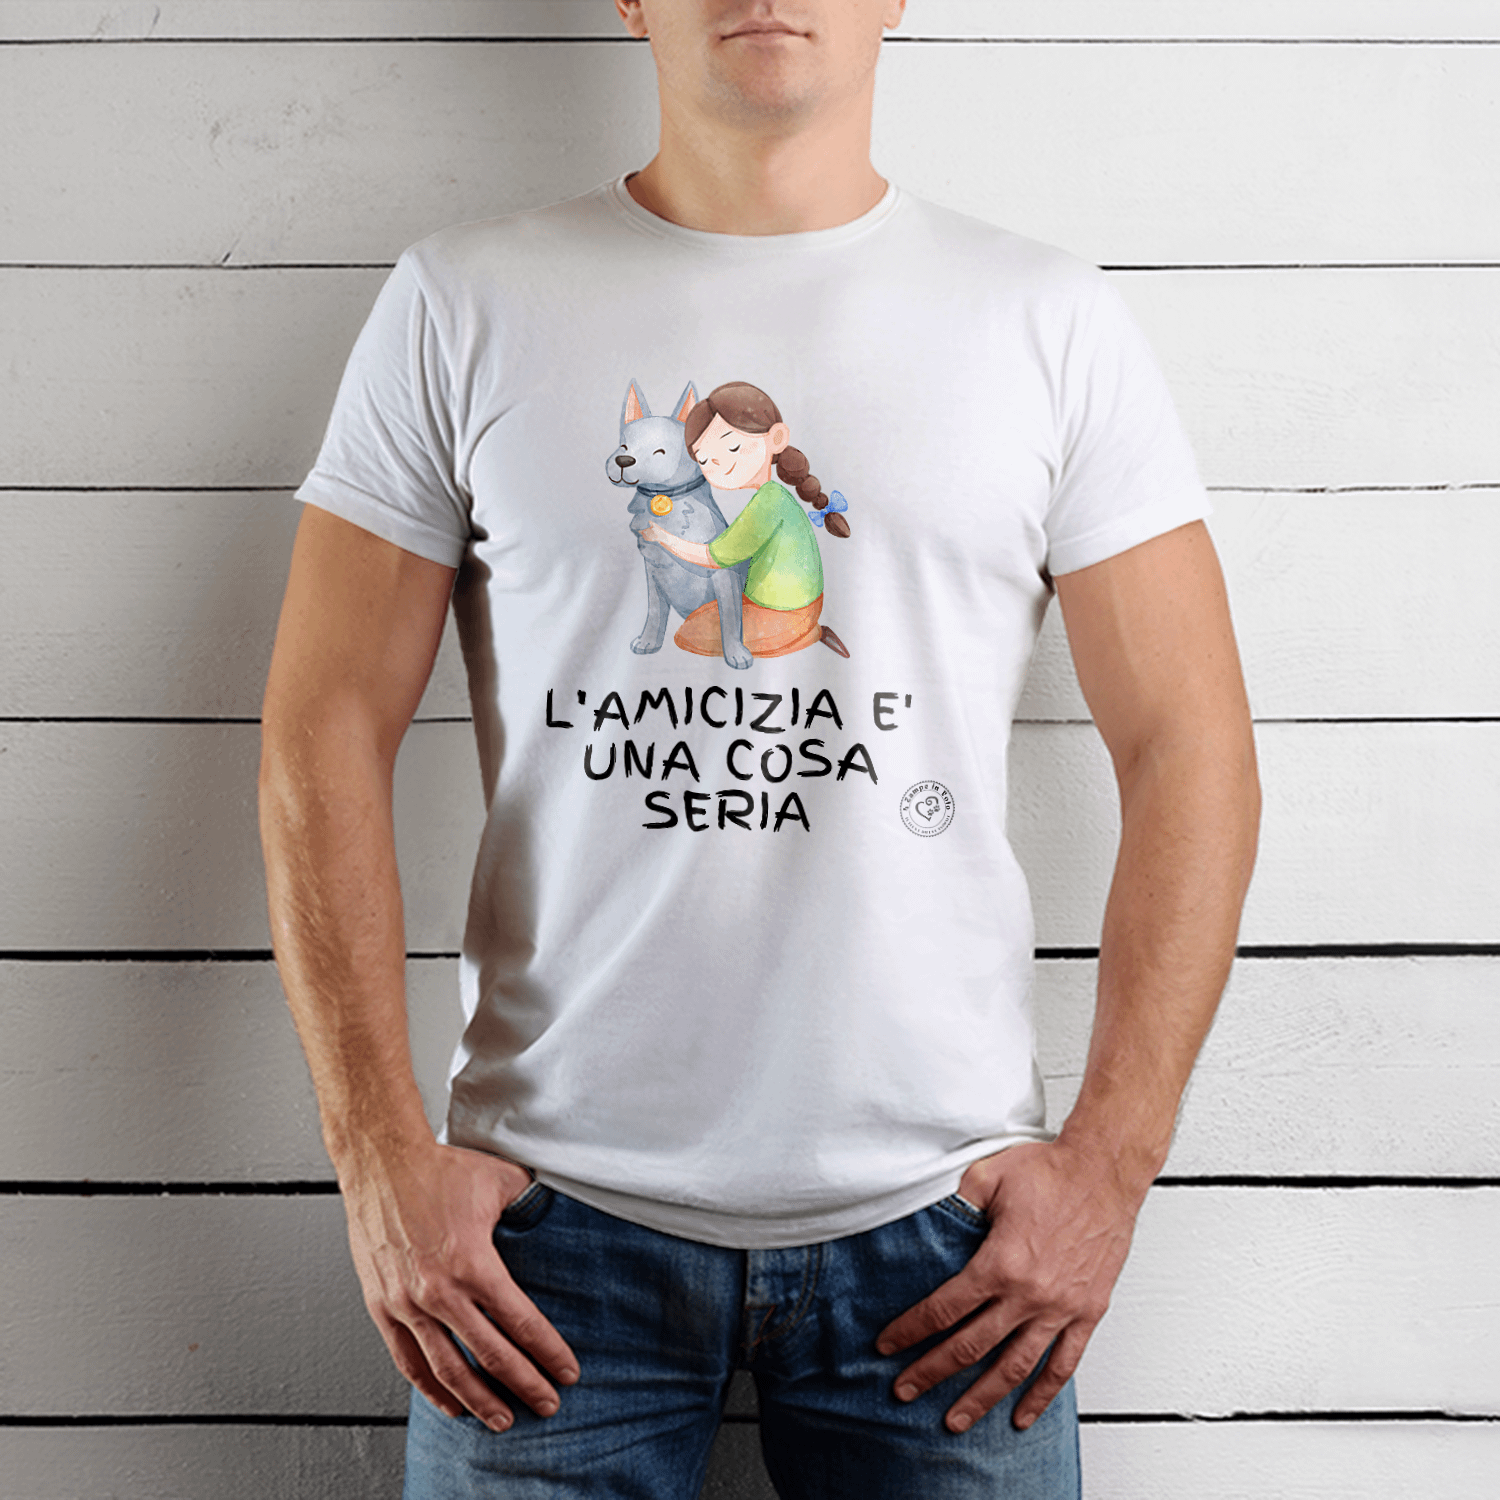 T-Shirt Solidale "L'Amicizia è una cosa seria" grafica Nera